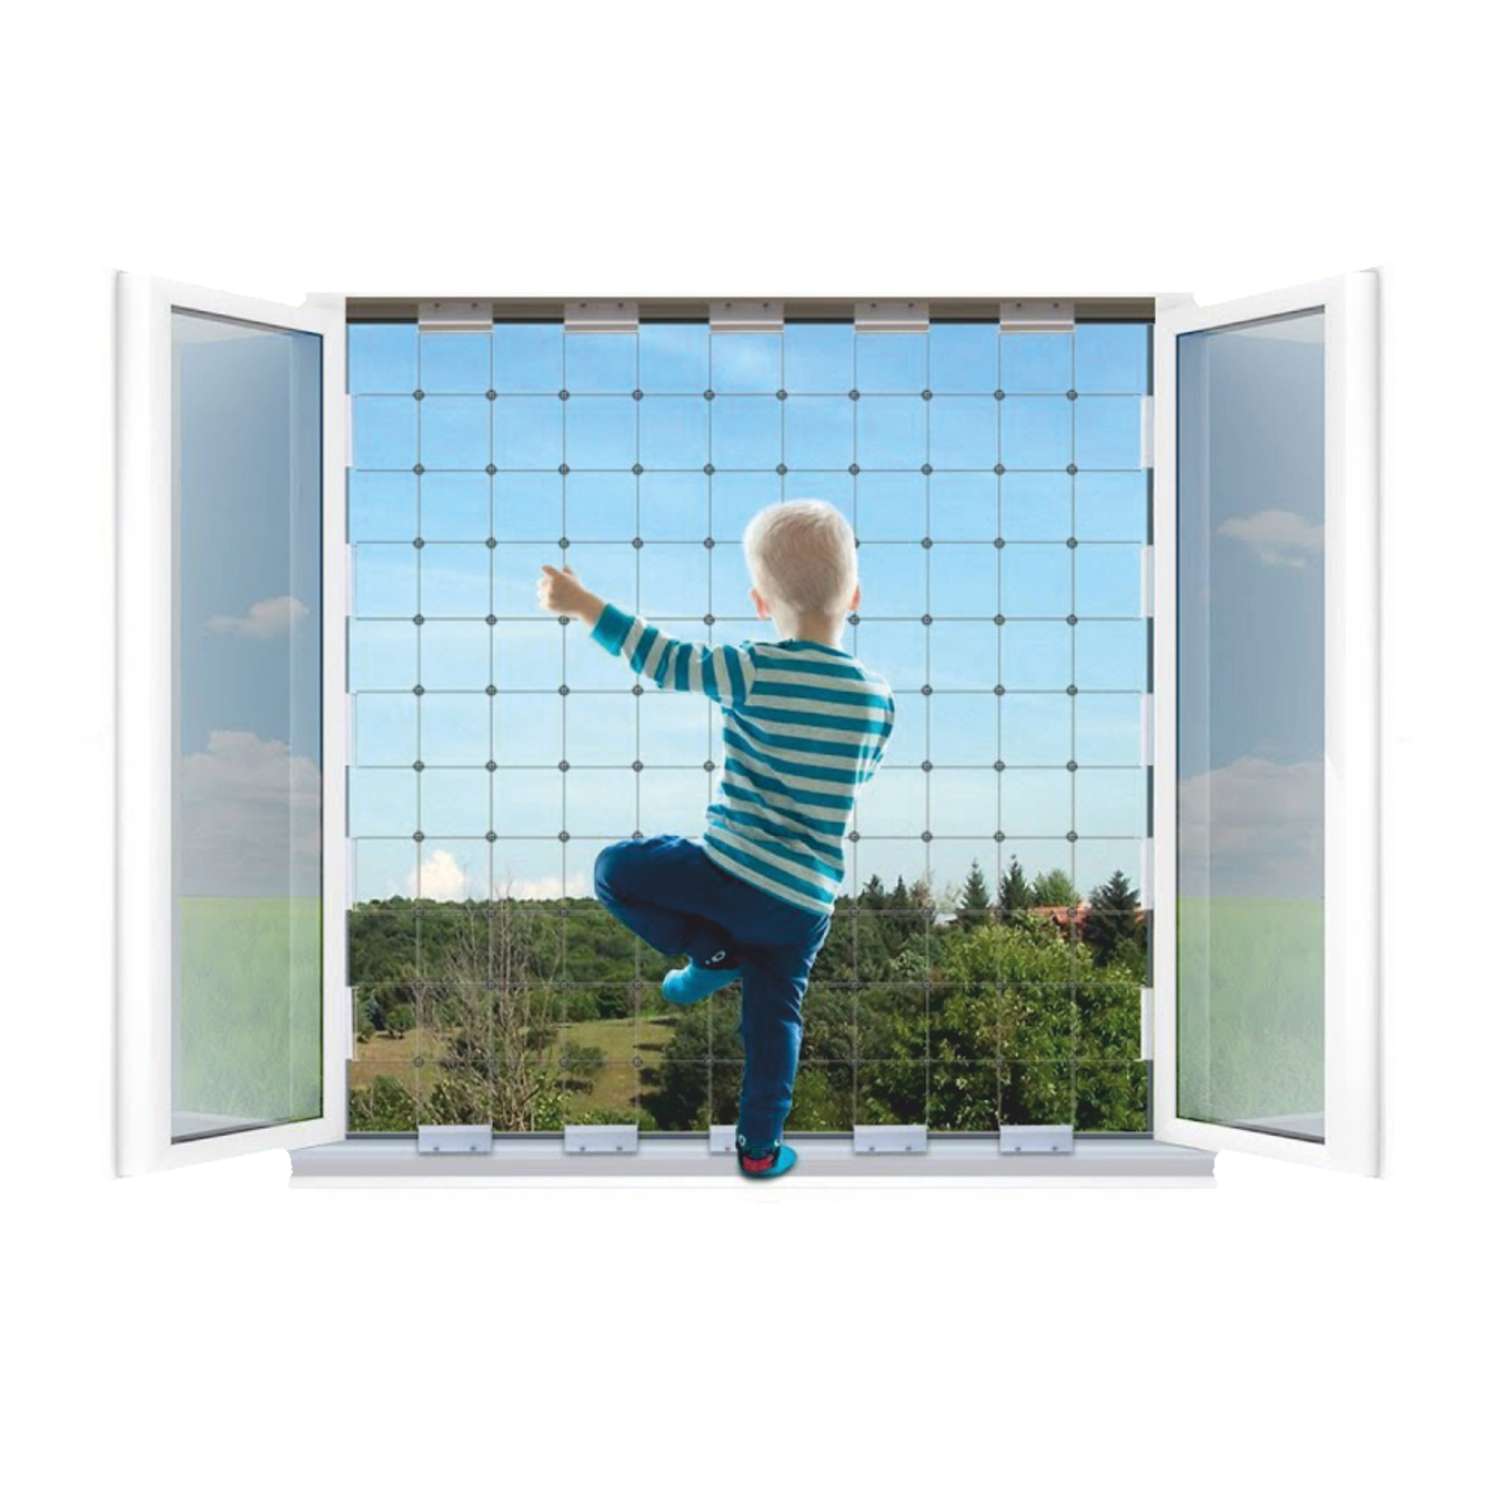 Защитная сетка WINBLOCK на окна для детей 60х140см чёрный кронштейн - фото 2